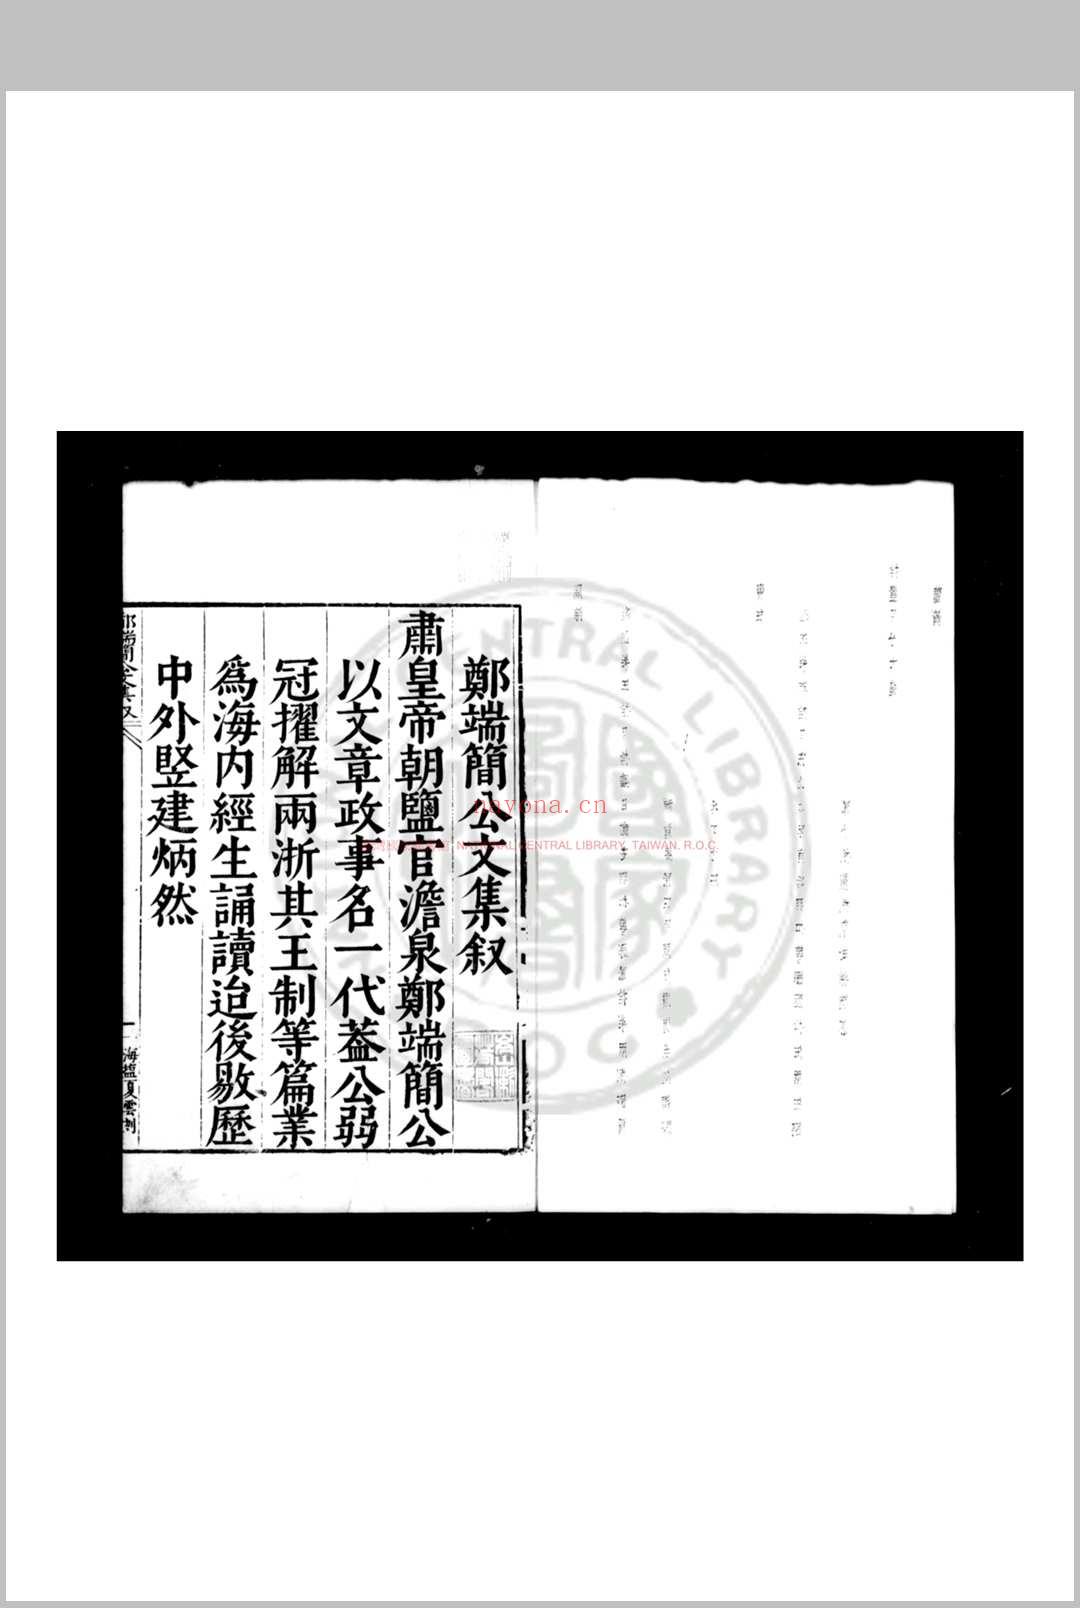 郑端简公文集 (明)郑晓撰 明万历庚子(二十八年, 1600)海盐郑氏家刊本